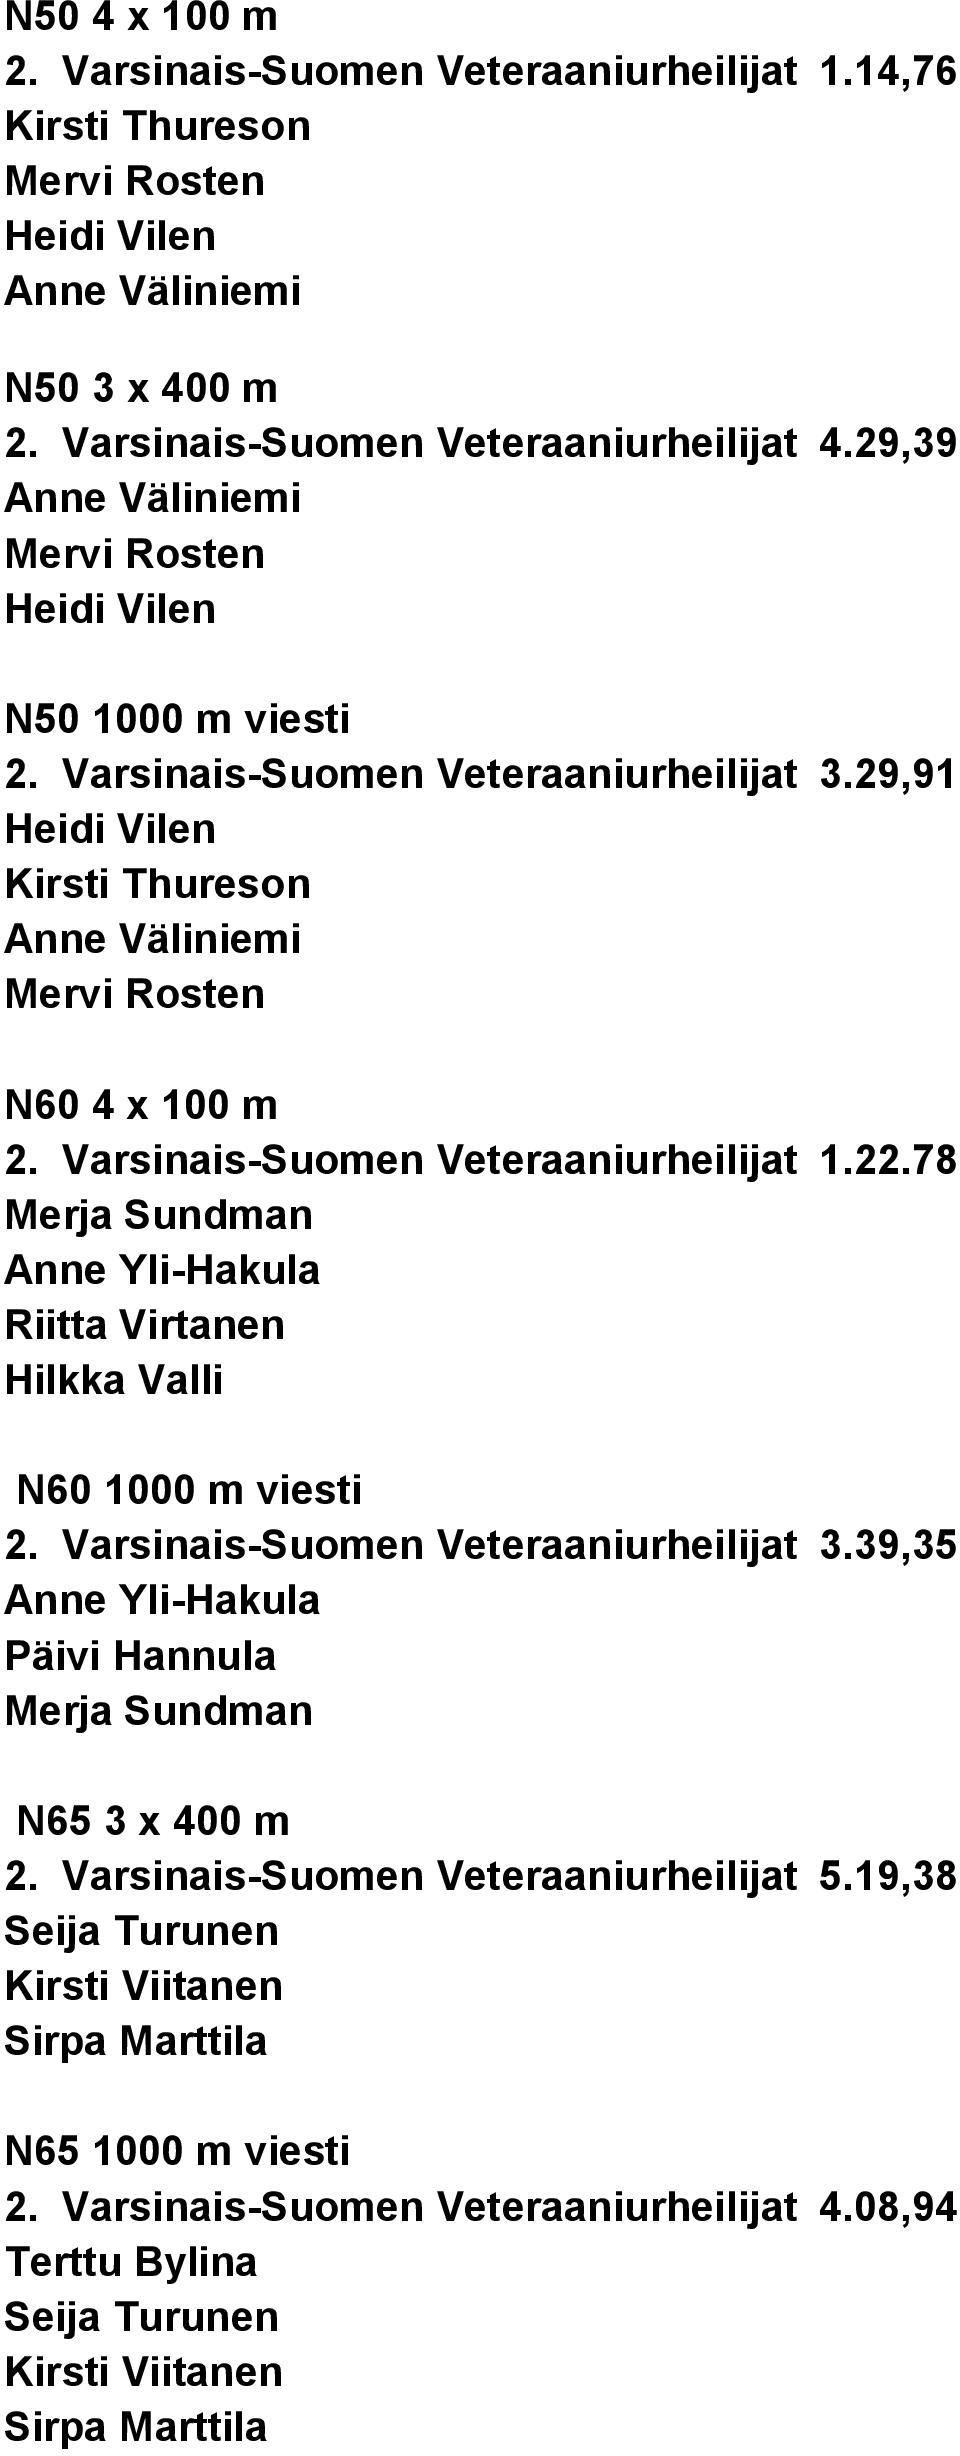 Varsinais-Suomen Veteraaniurheilijat 1.22.78 Merja Sundman Anne Yli-Hakula Riitta Virtanen Hilkka Valli N60 1000 m viesti 2. Varsinais-Suomen Veteraaniurheilijat 3.